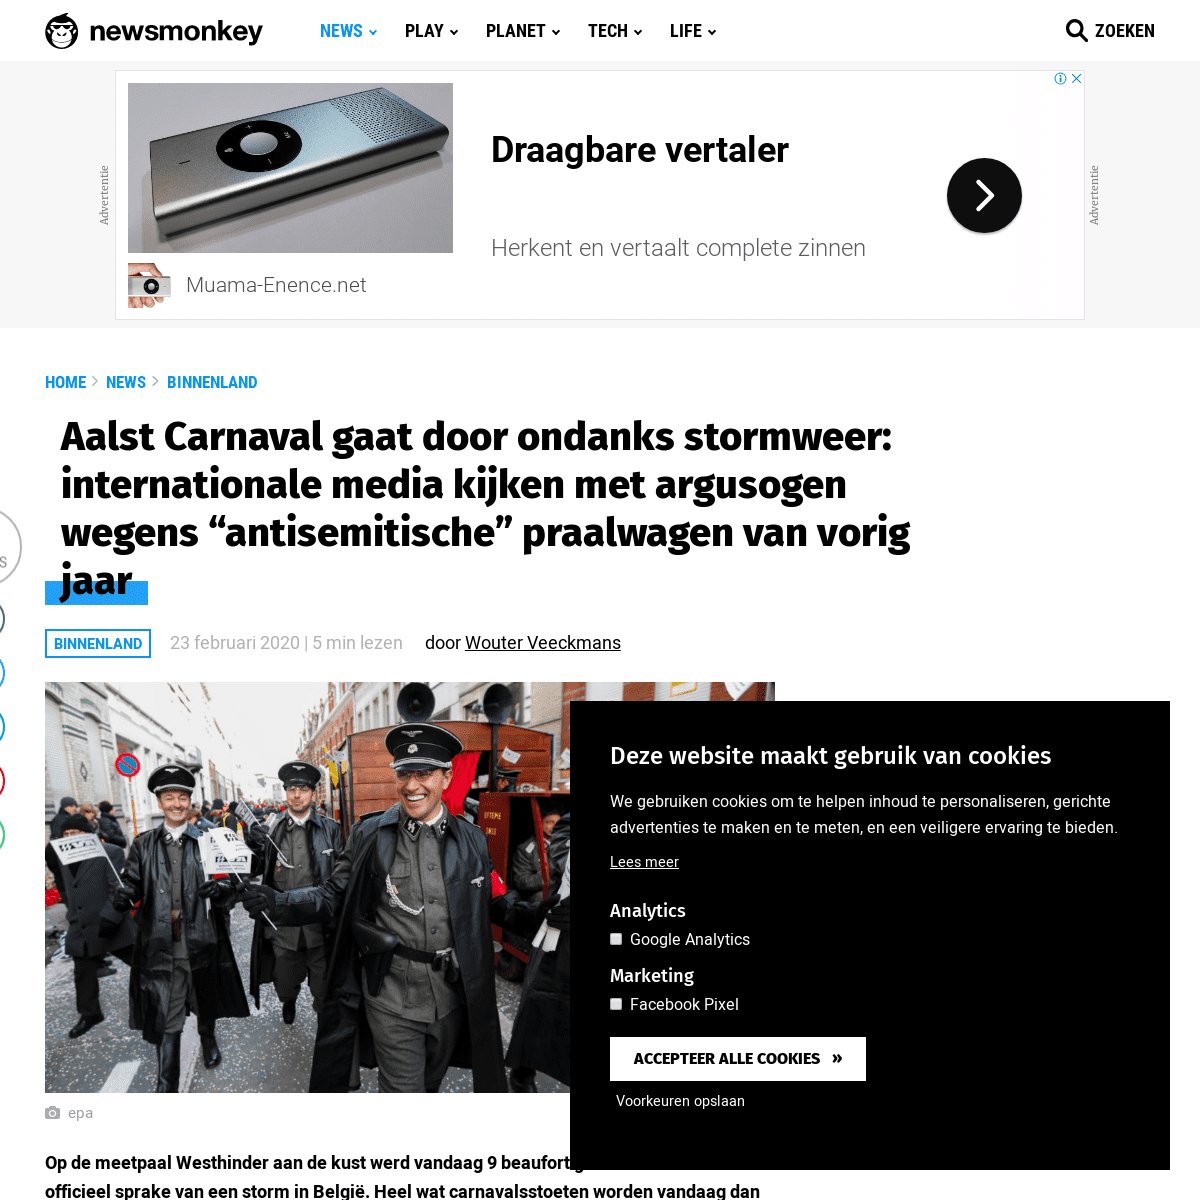 A complete backup of newsmonkey.be/aalst-carnaval-gaat-door-ondanks-stormweer-internationale-media-kijken-met-argusogen-wegens-a